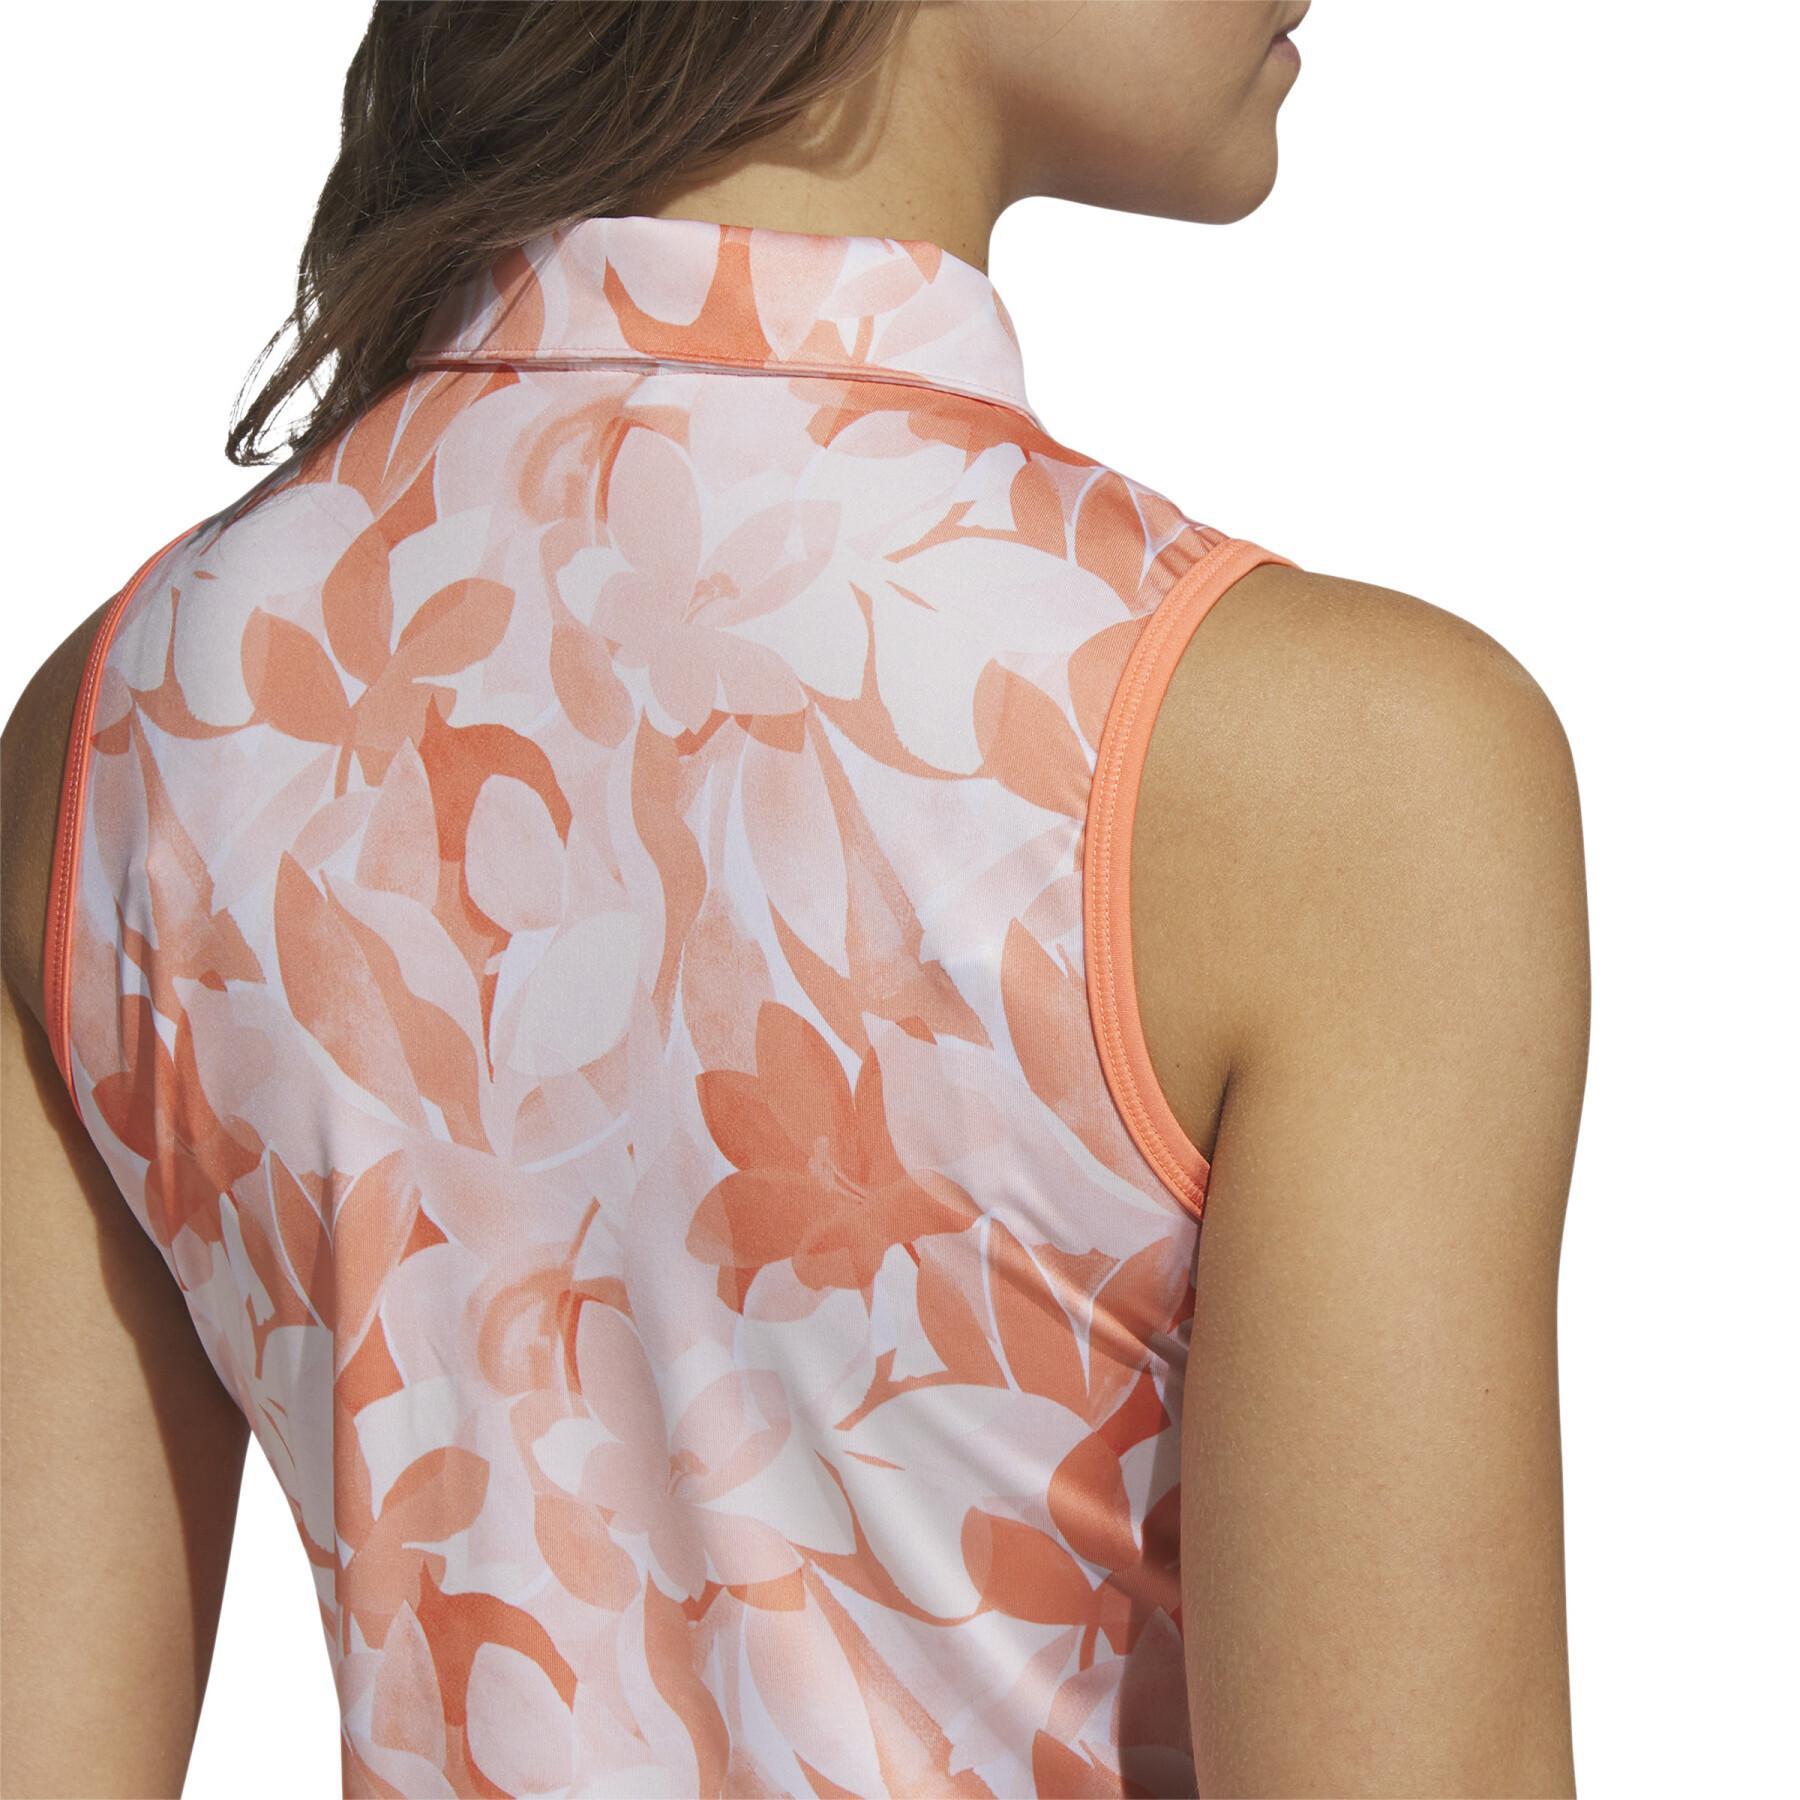 Ärmelloses Polo-Shirt für Frauen adidas Floral